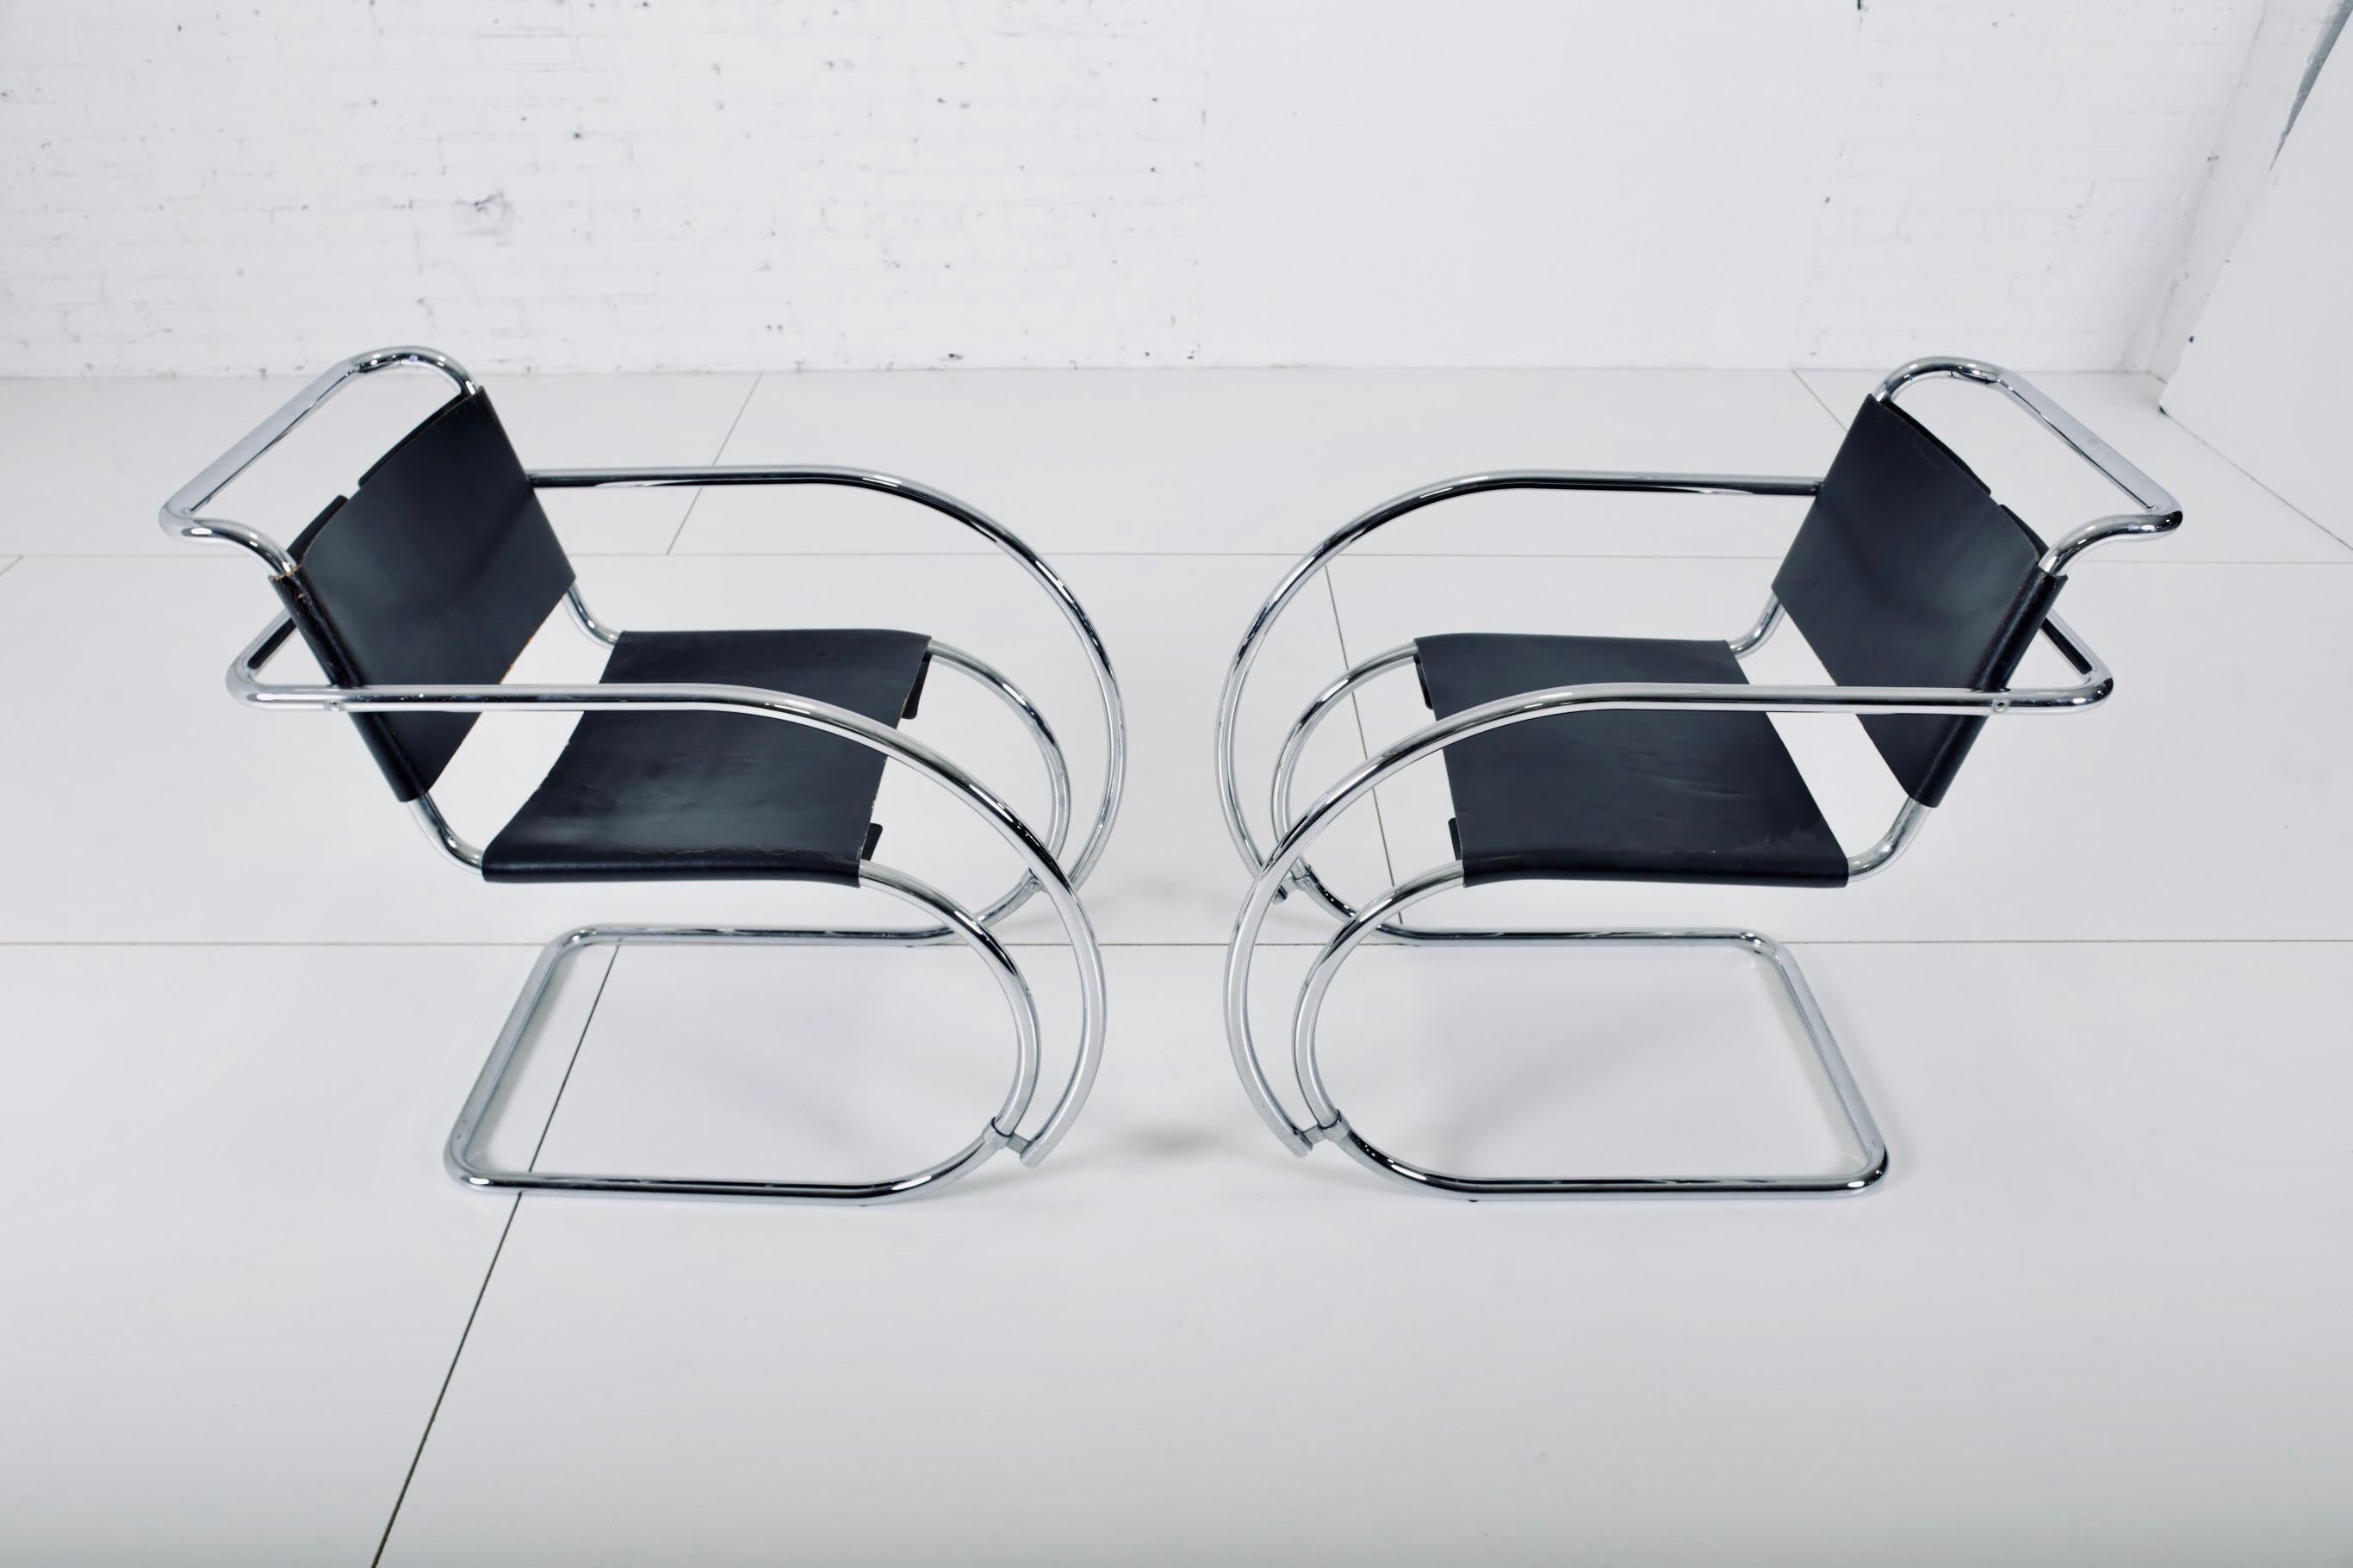 Paire de fauteuils MR20 des années 1960, conçus par Mies van der Rohe pour Knoll. Le cuir d'origine et les cadres en acier inoxydable sont en grande forme. Les chaises portent les premières étiquettes Knoll.

 